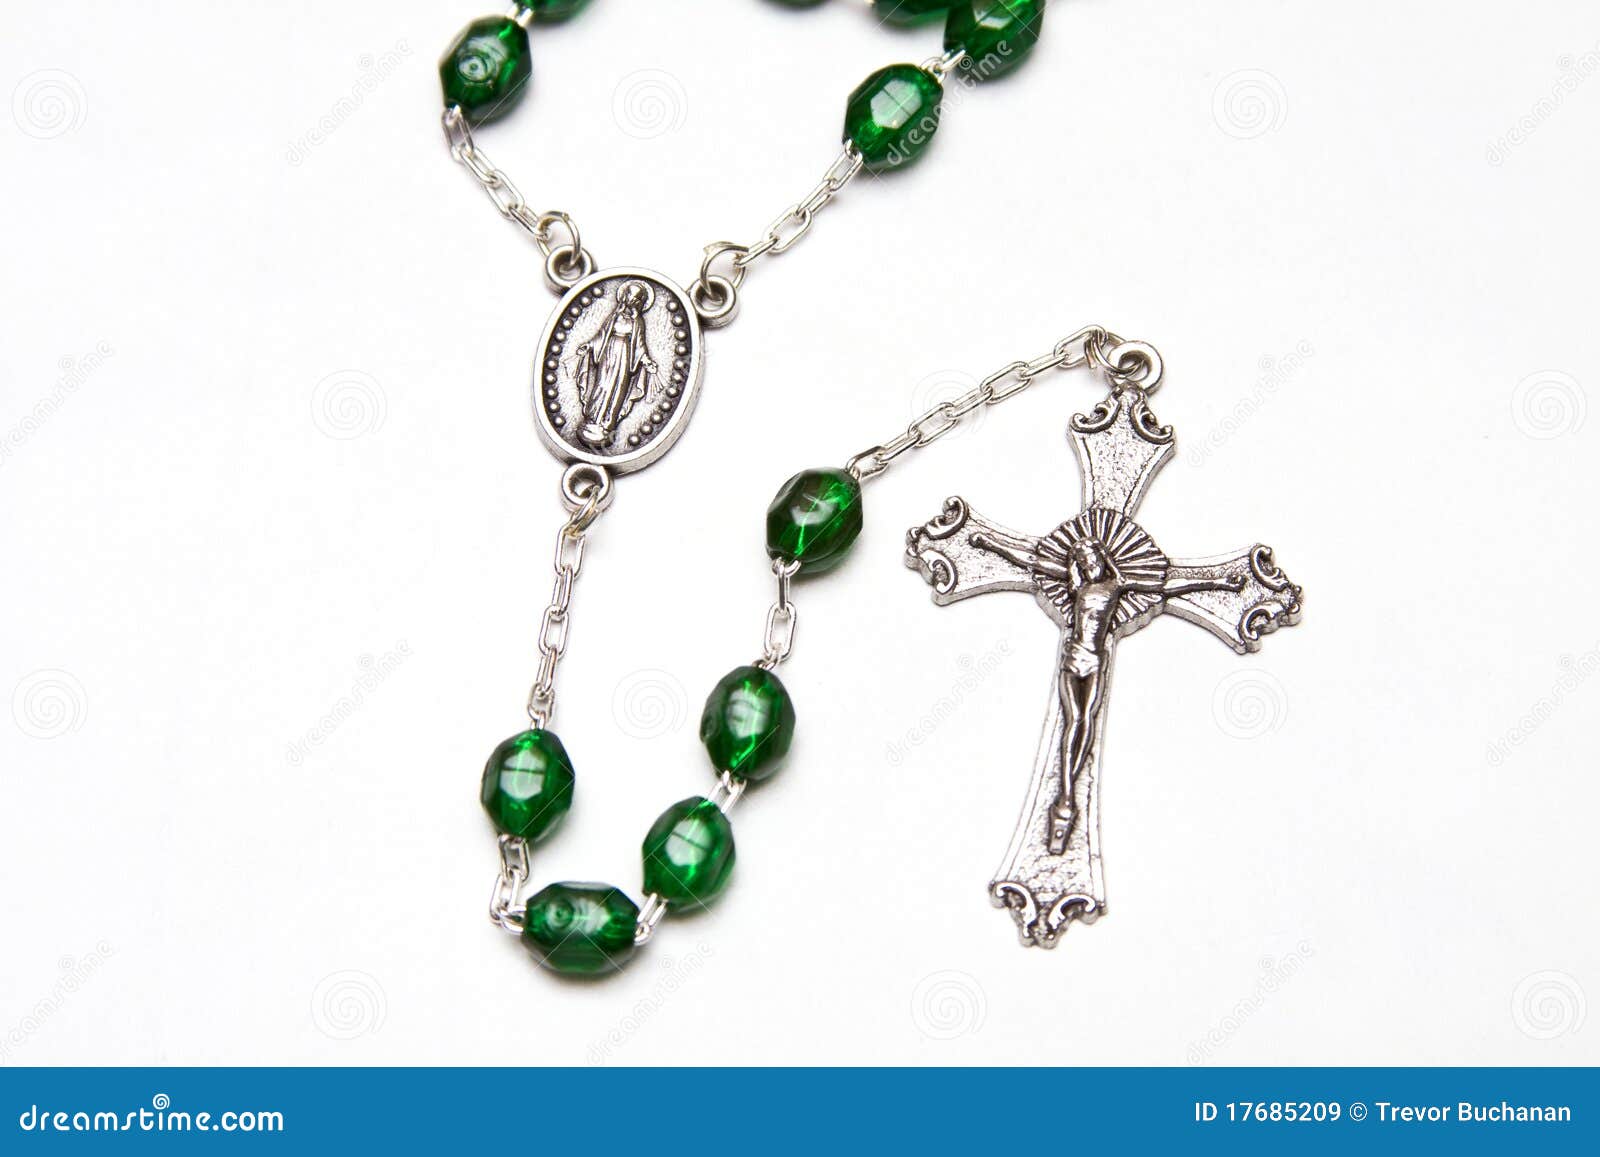 catholic rosary beads